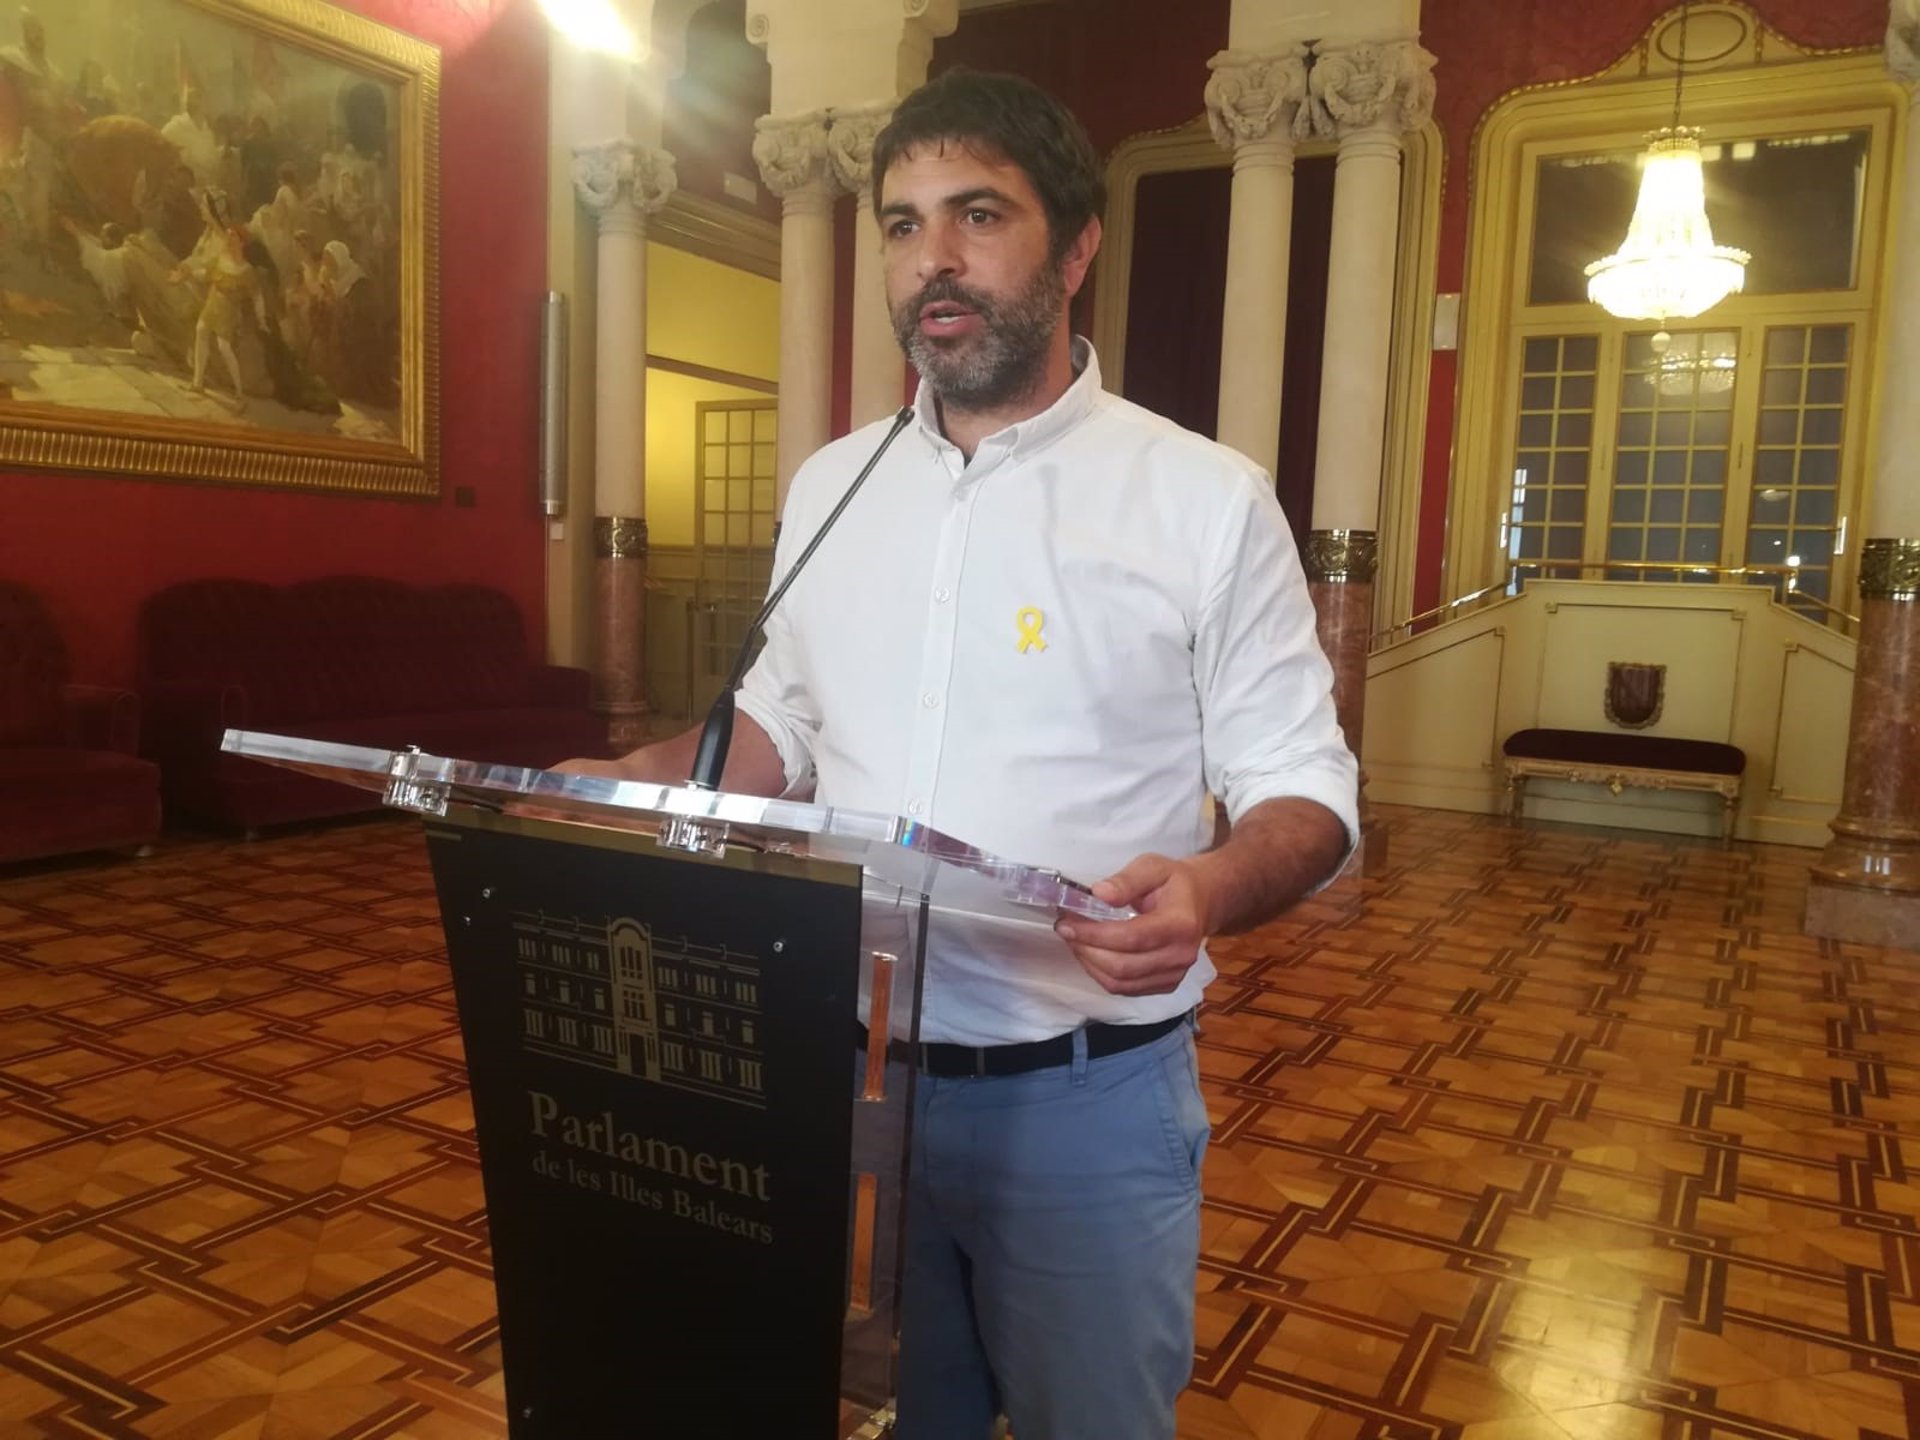 MÉS lamenta los 'pocos esfuerzos' del Gobierno por 'restituir los derechos vulnerados desde el 1 de octubre' en Cataluña